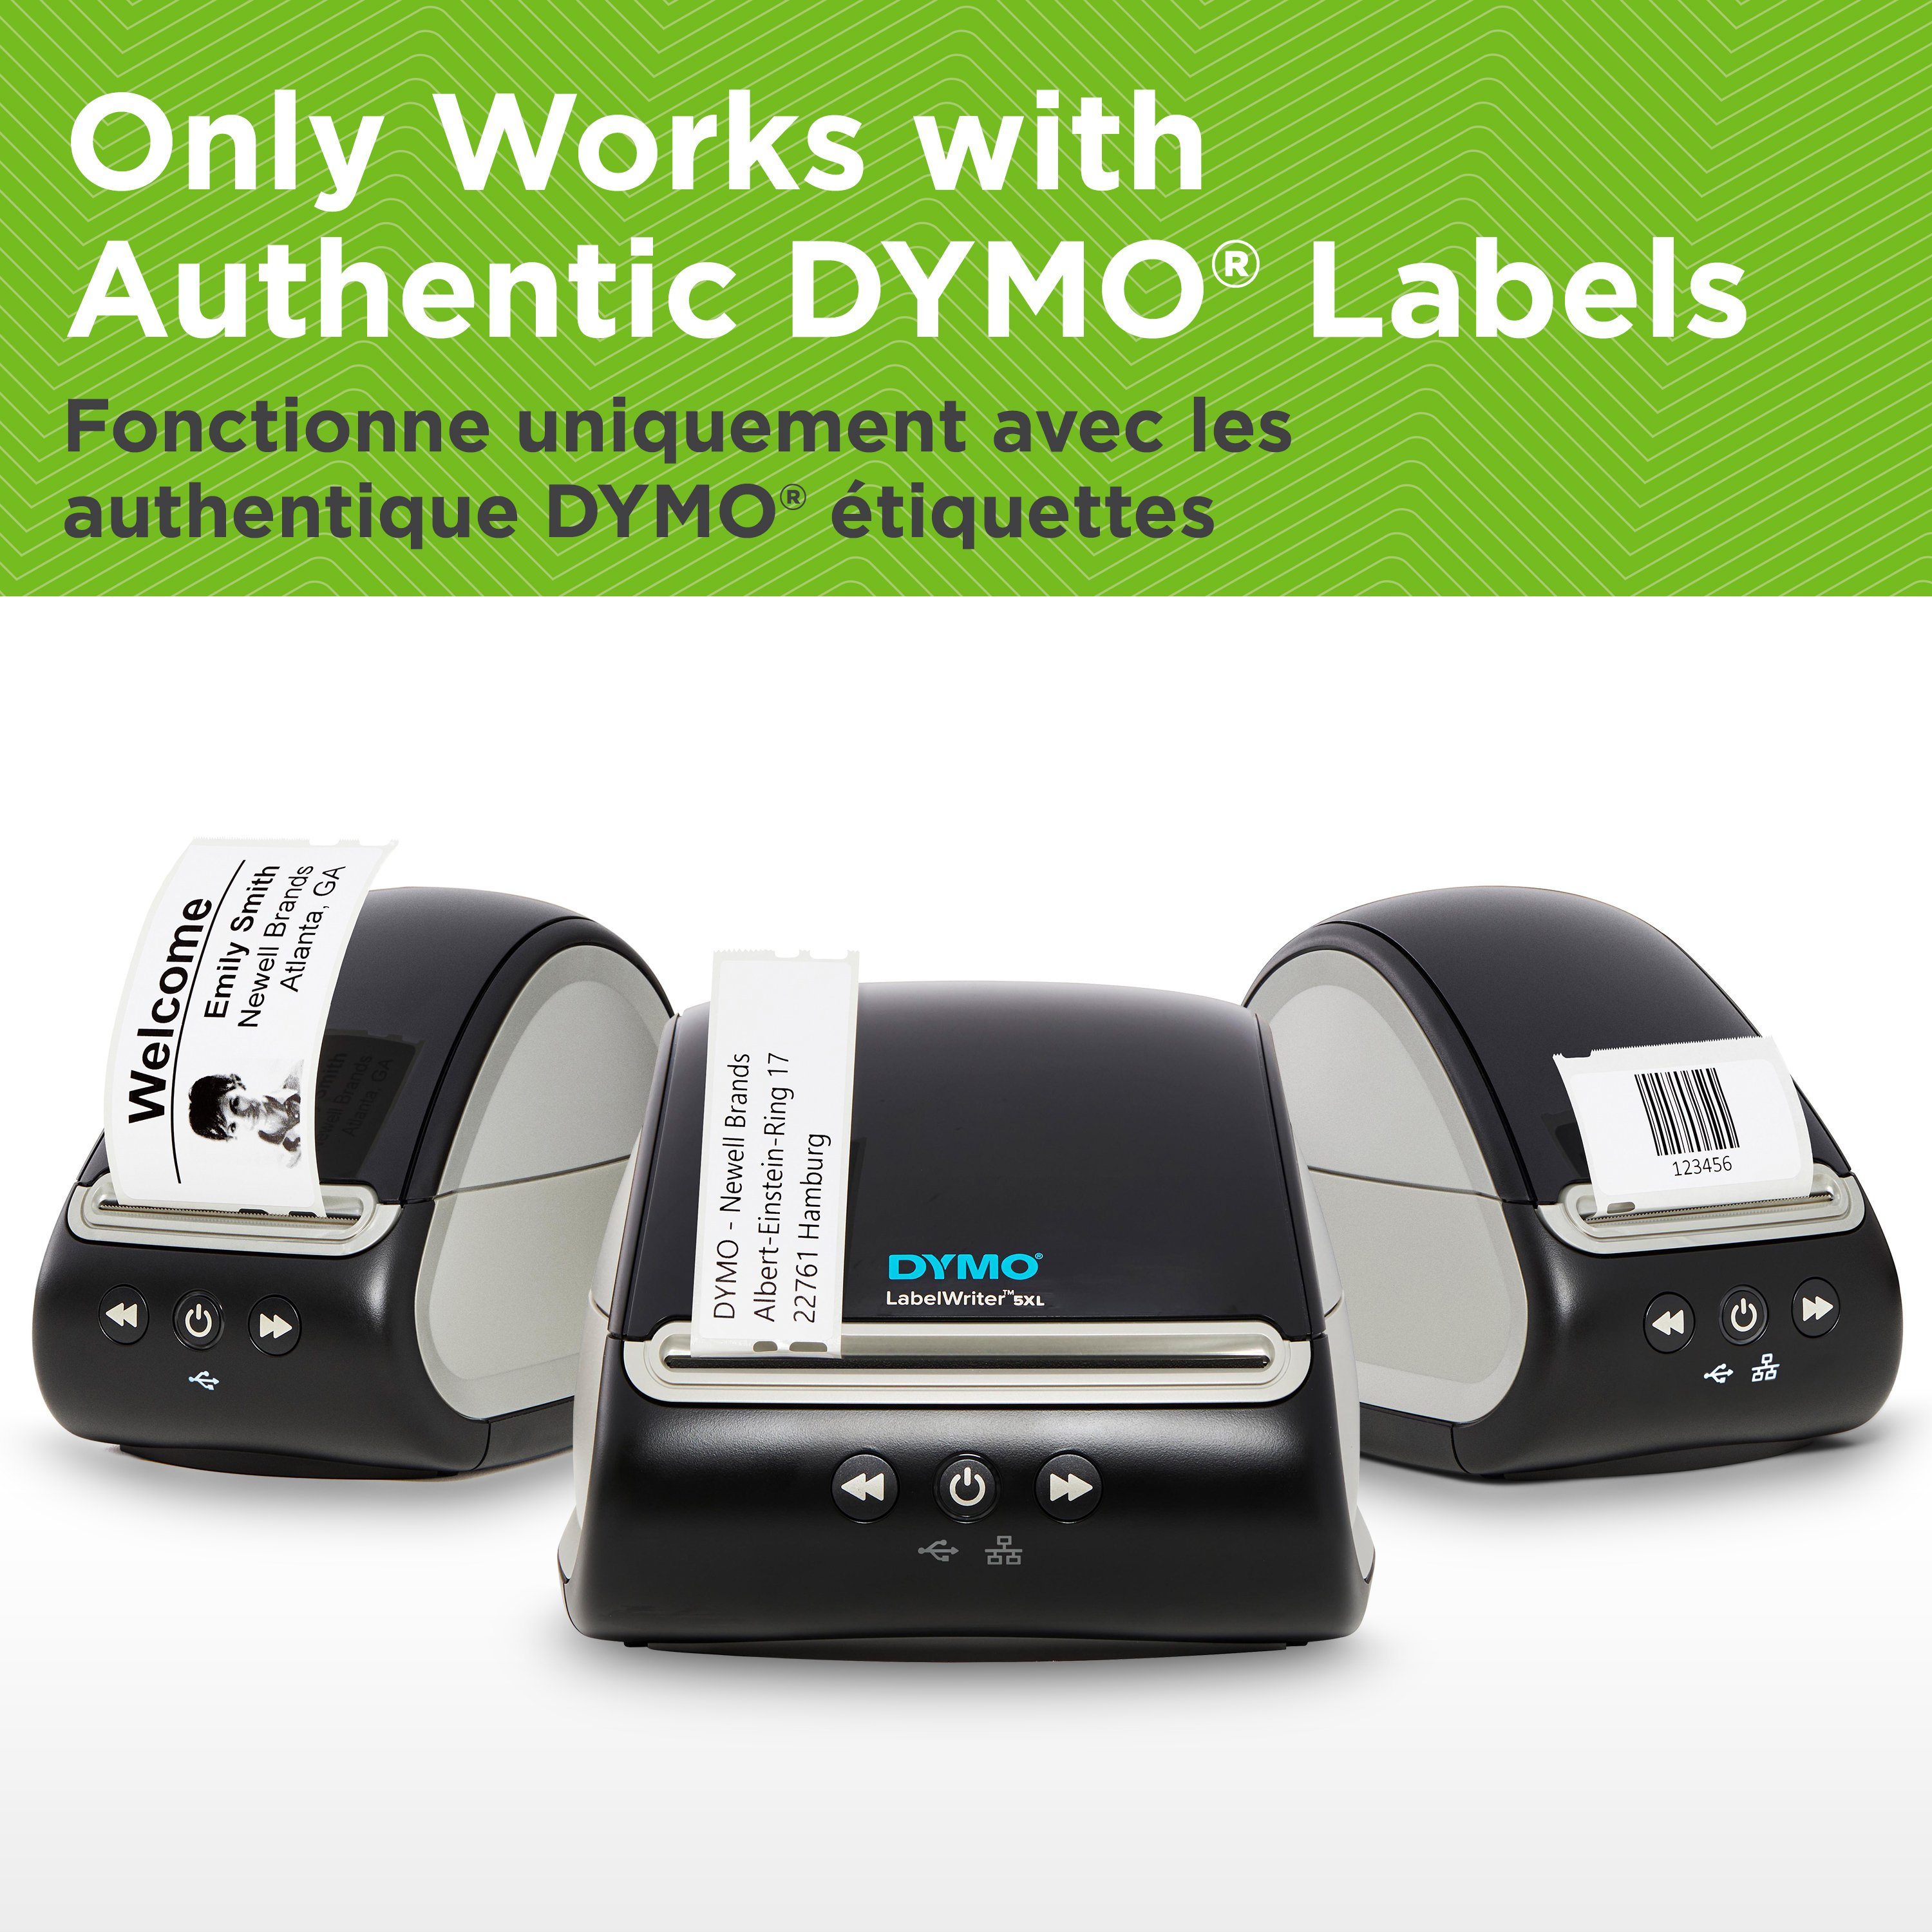 Etichettatrice Dymo Labelwriter 450 turbo - Stampante per etichette